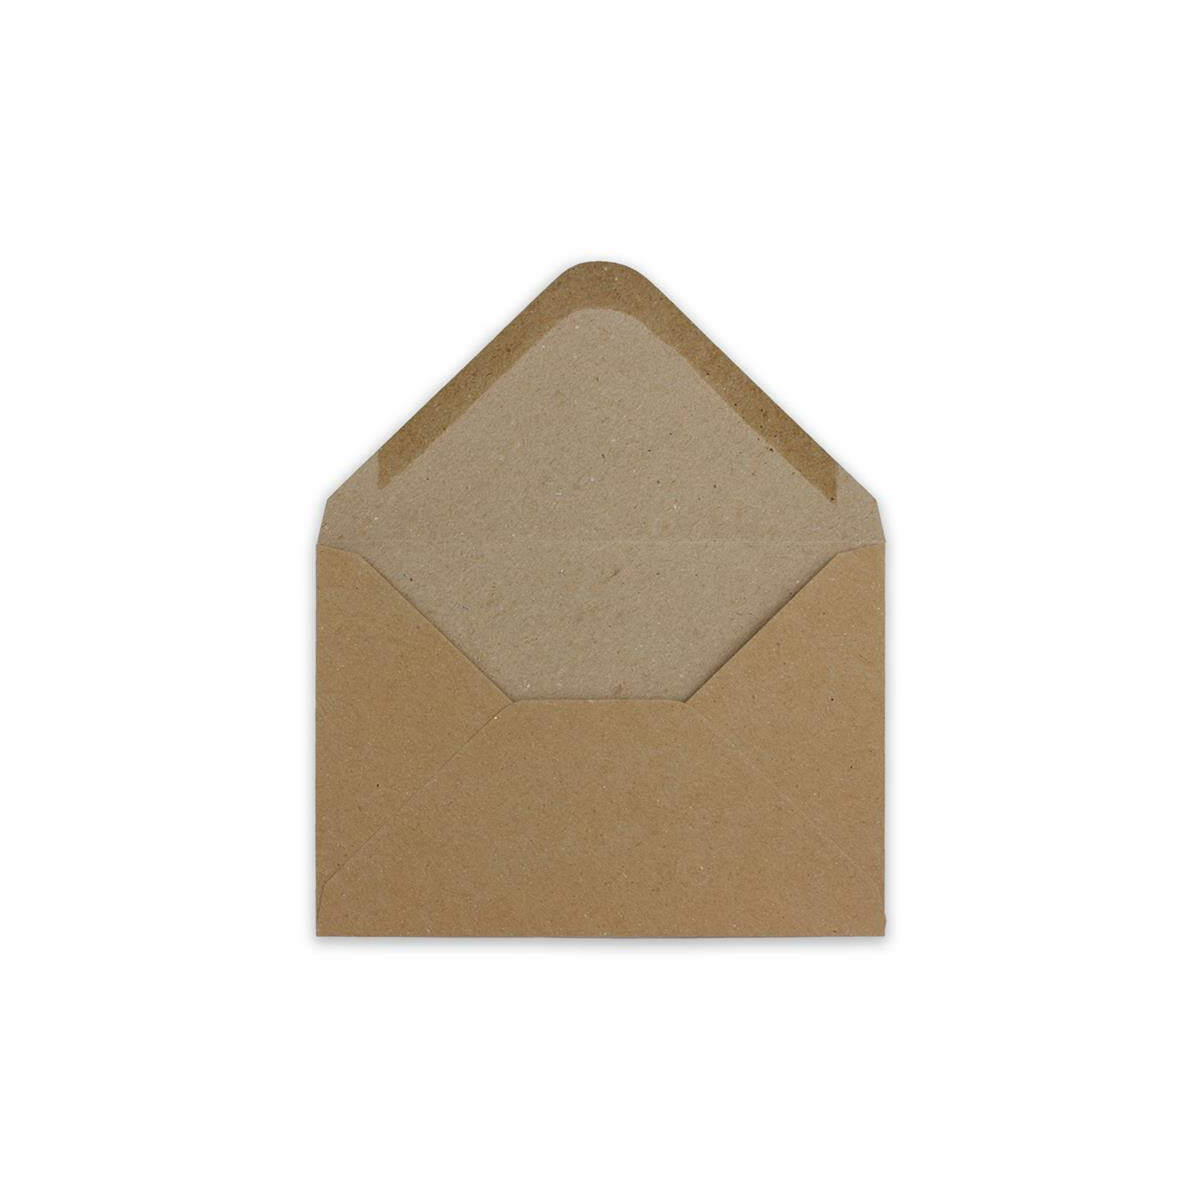 200 DIN B6 Briefumschläge Vintage Braun Recycling 17,8 x 12,5 cm 120 g/m² Nassklebung Post-Umschläge ohne Fenster ideal für Weihnachten Grußkarten Einladungen von Ihrem Glüxx-Agent 